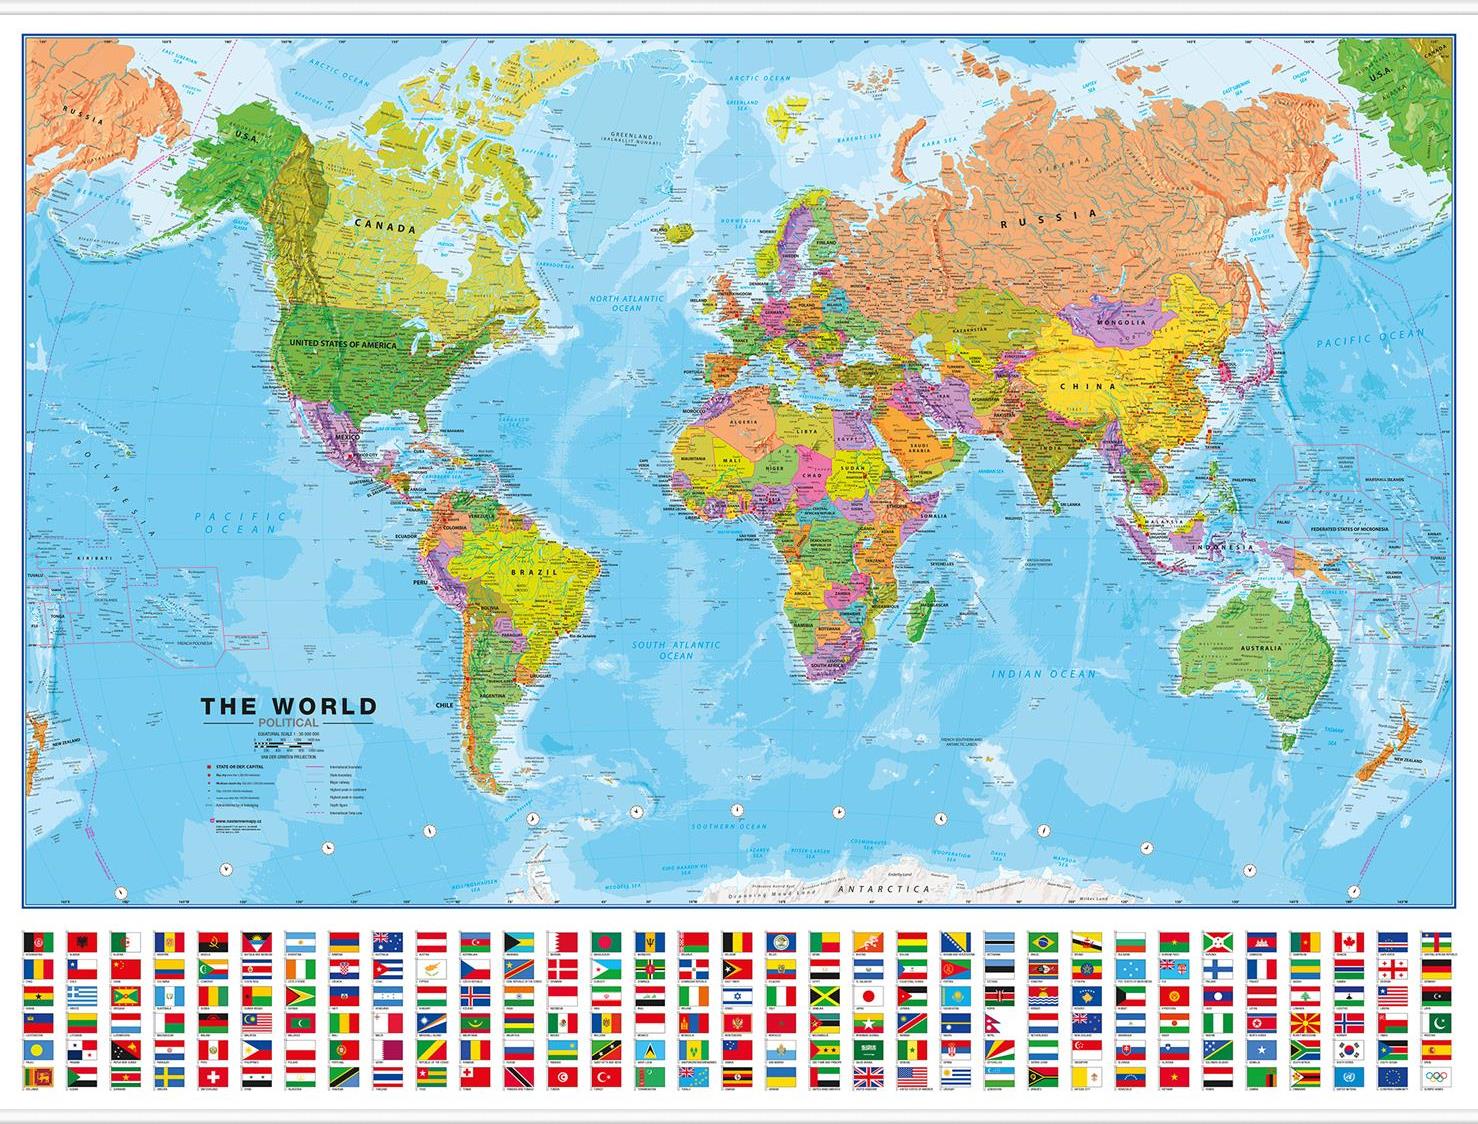 Politická nástěnná mapa světa s vlajkami